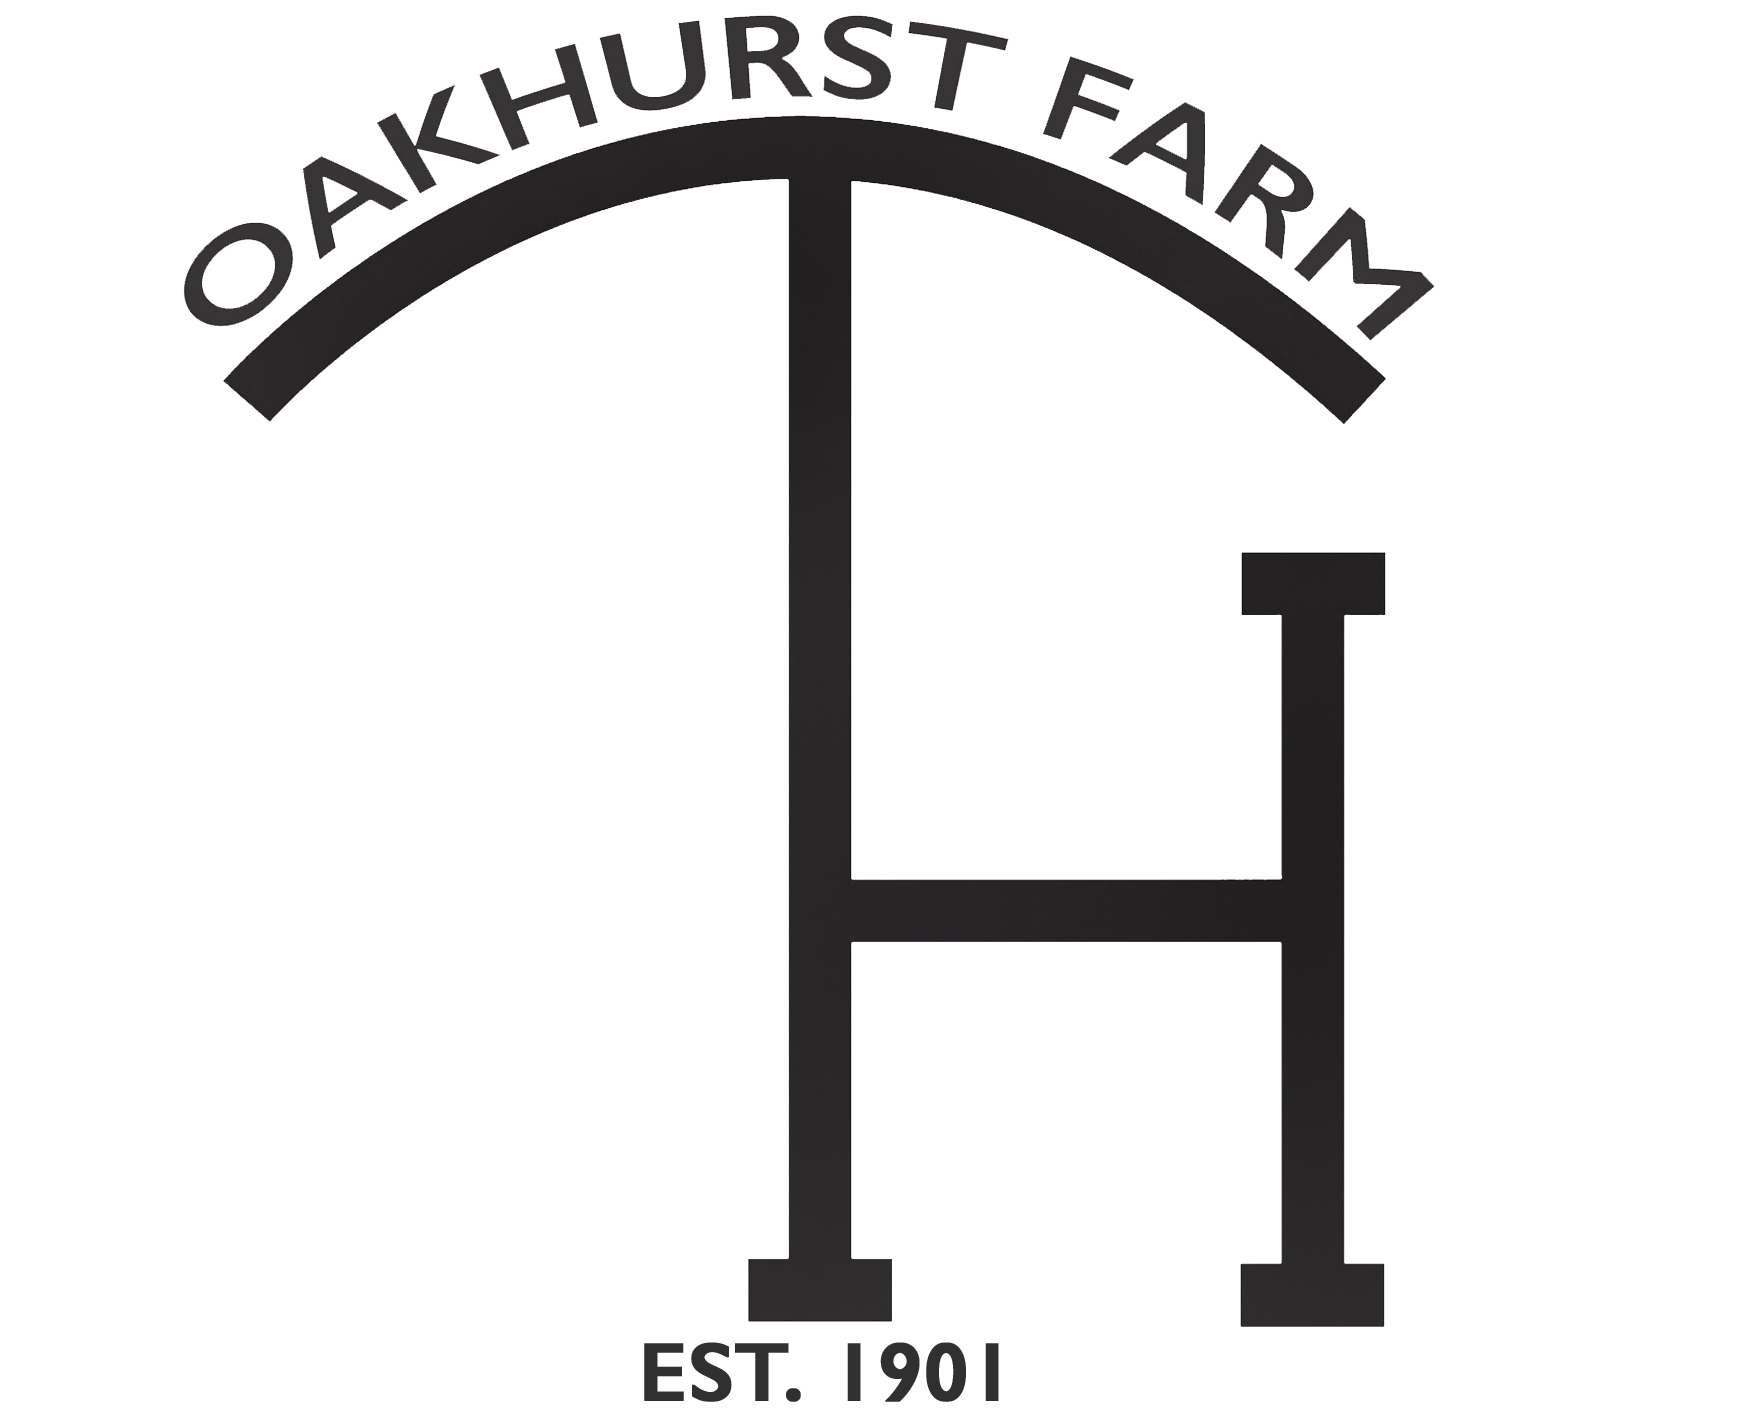 Oakhurst Farm